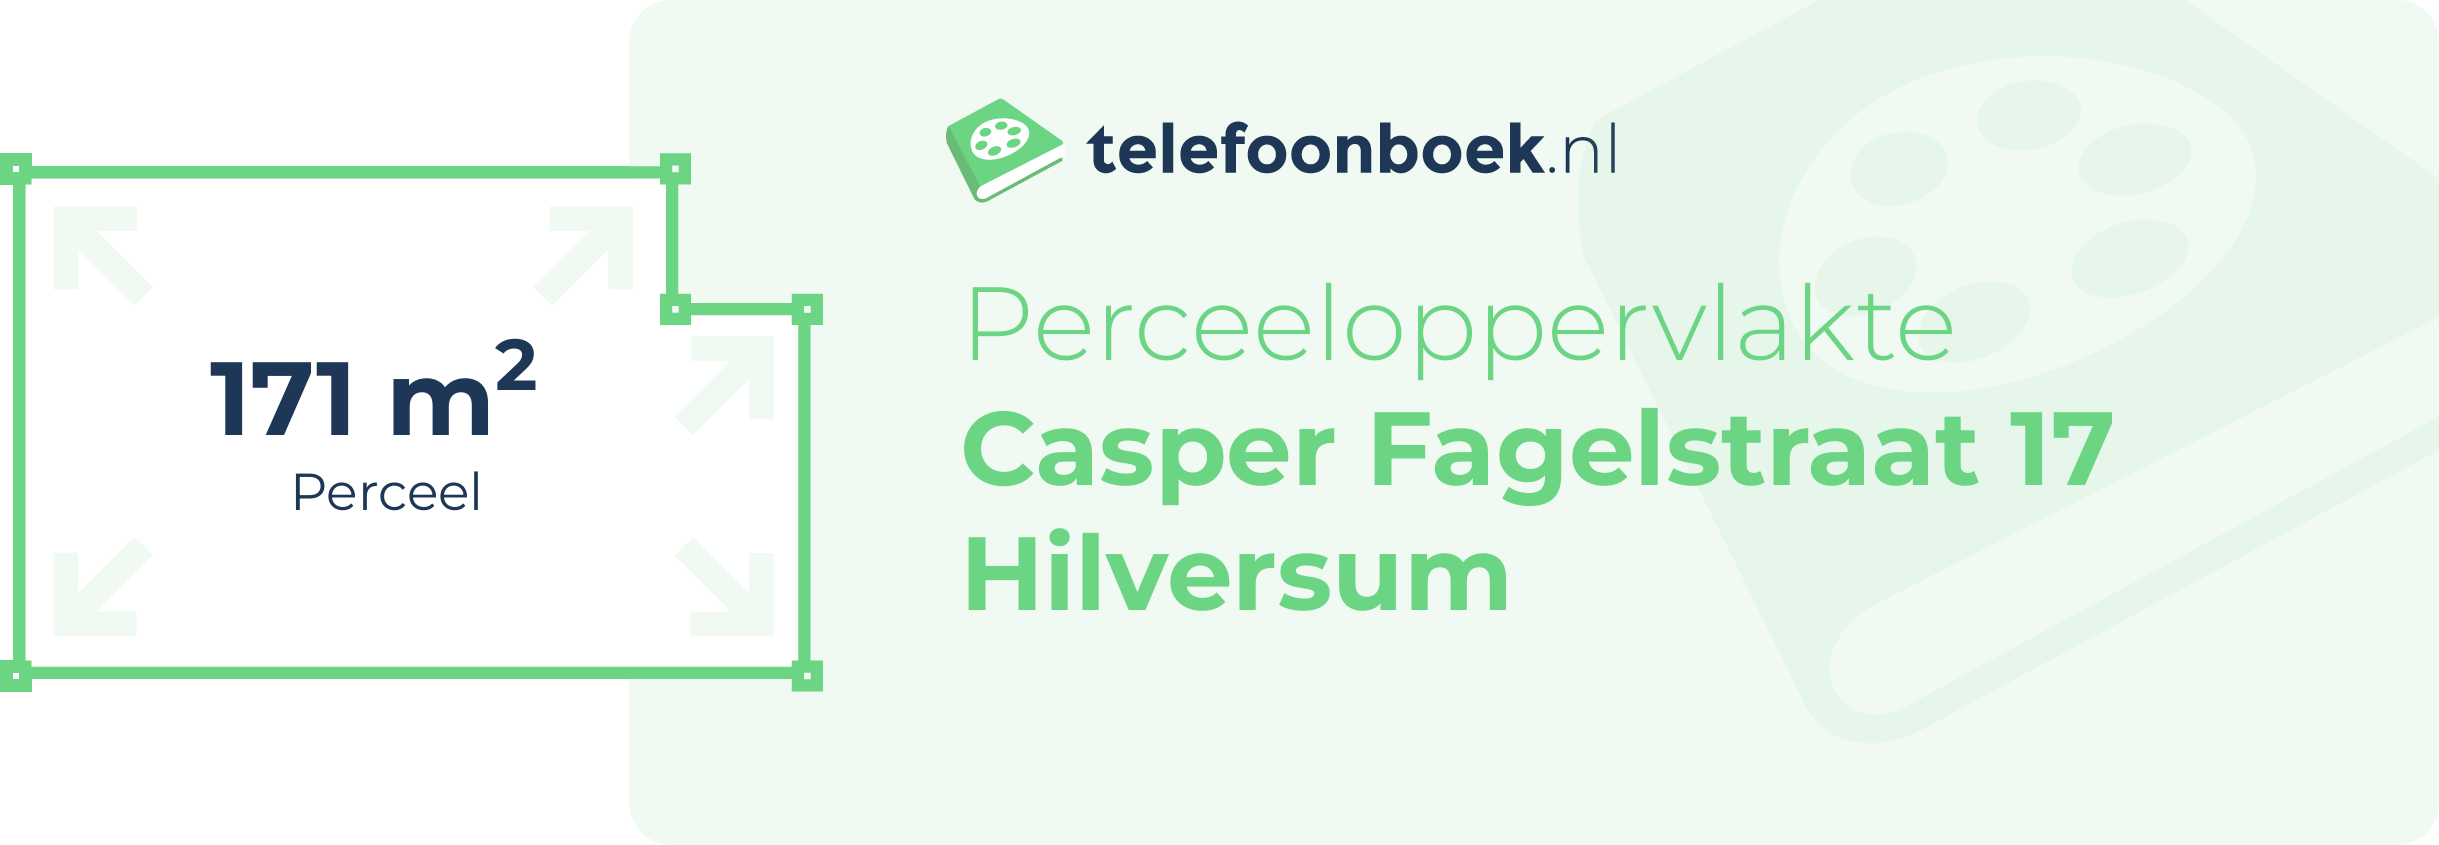 Perceeloppervlakte Casper Fagelstraat 17 Hilversum